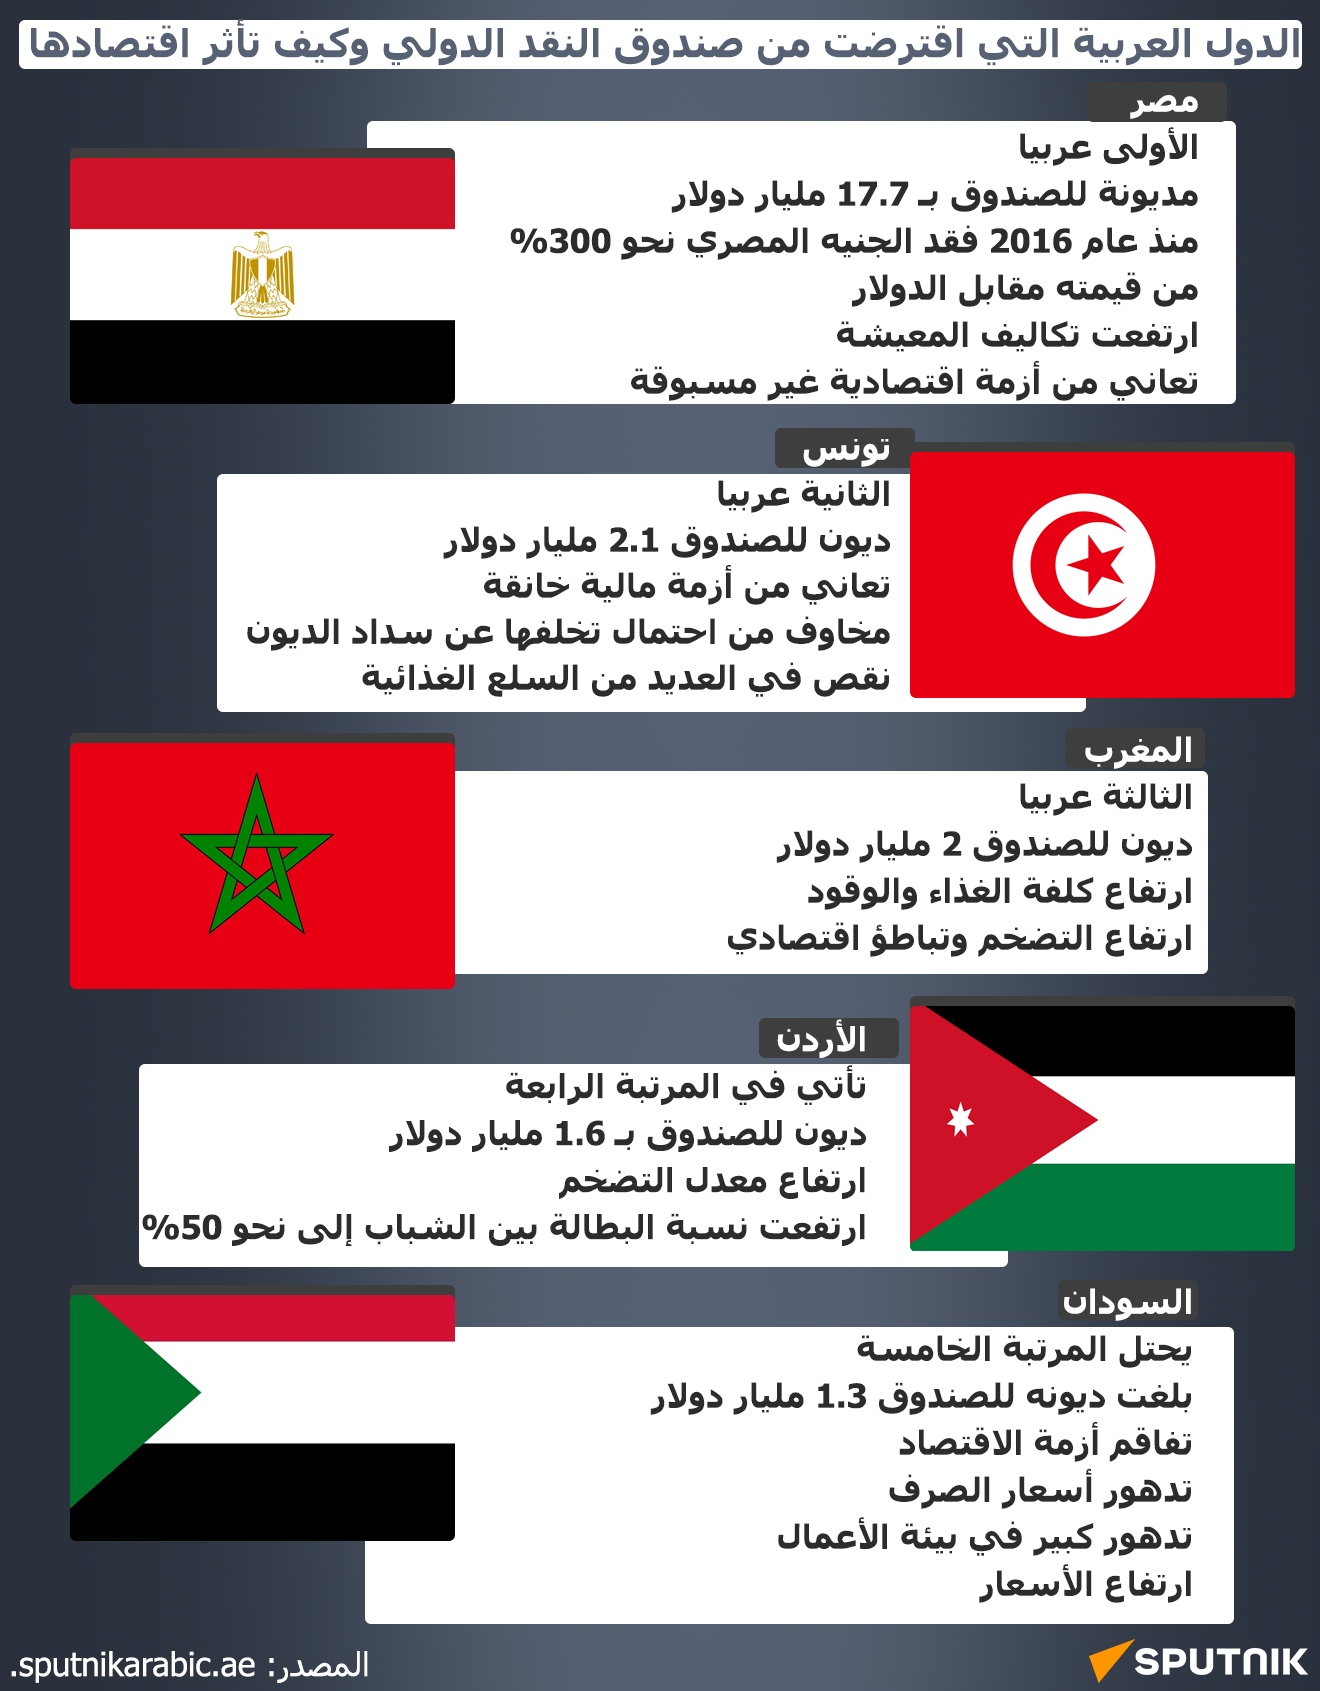 الدول العربية التي اقترضت من صندوق النقد الدولي وكيف تأثر اقتصادها - سبوتنيك عربي